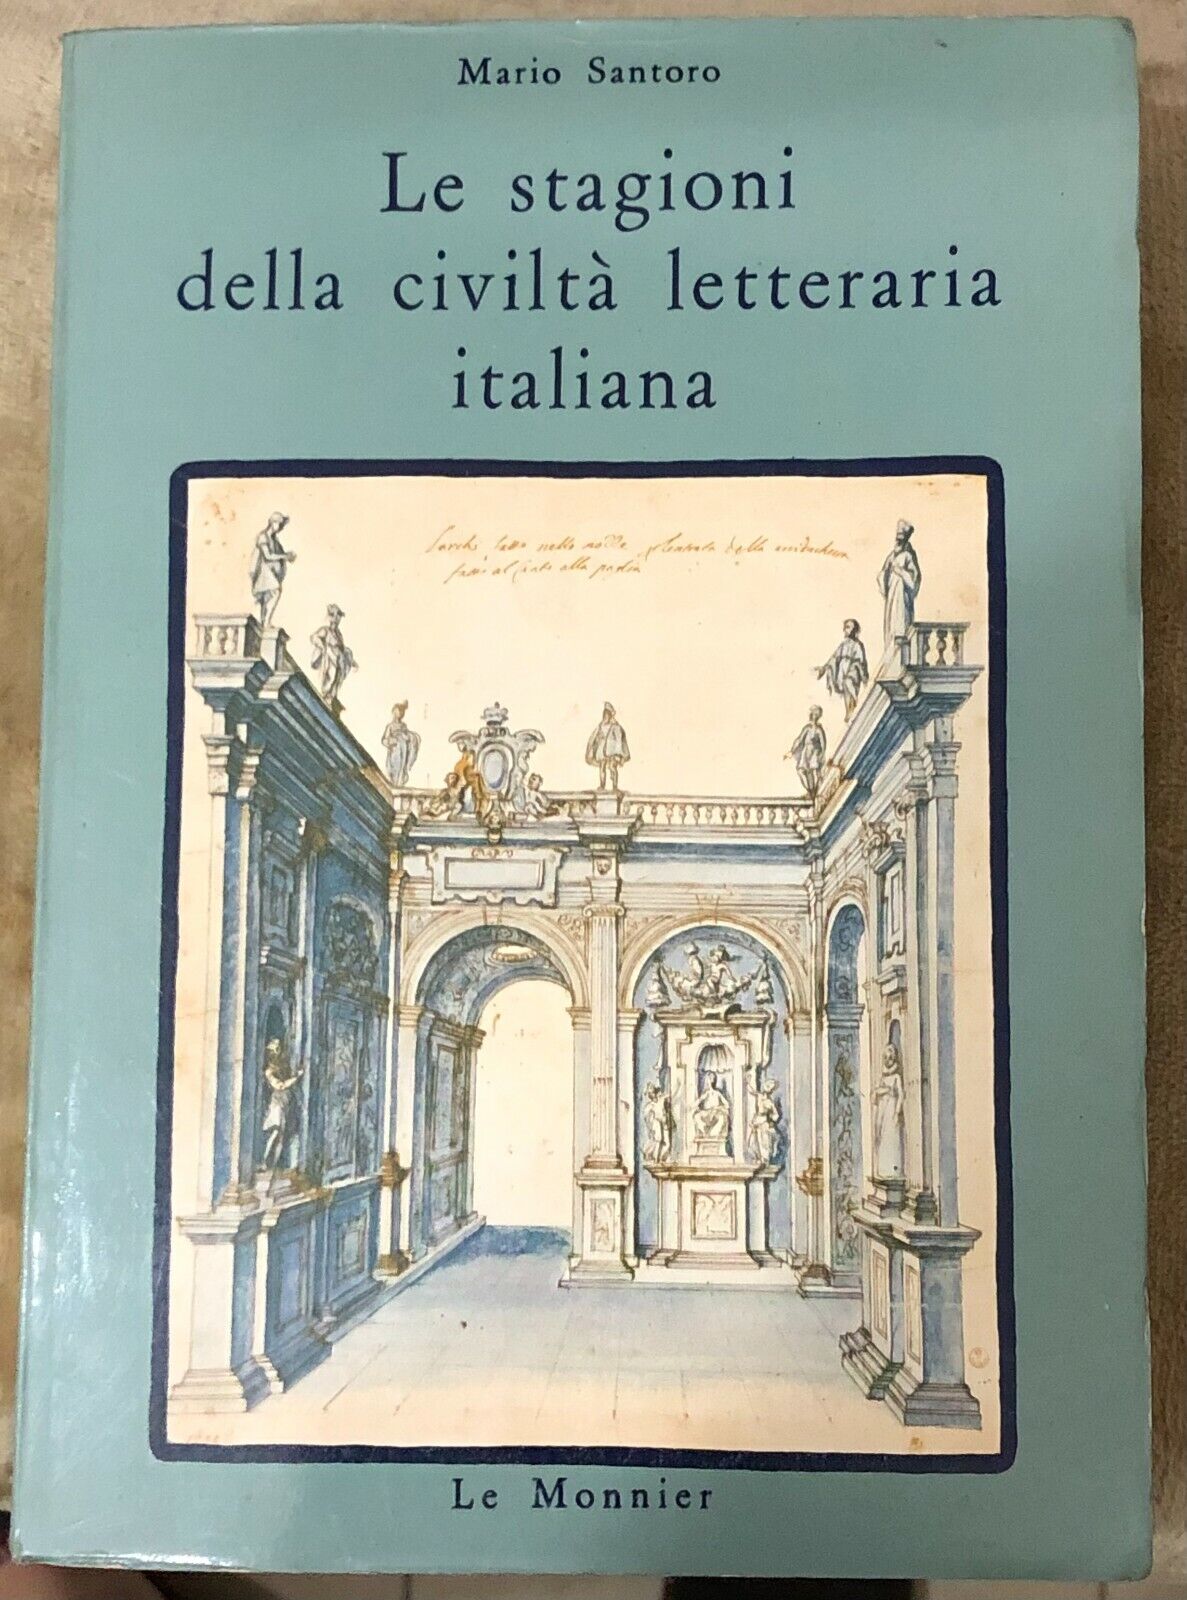 Le stagioni della civilt? letteraria italiana di Mario Santoro,  1979,  Le Monni